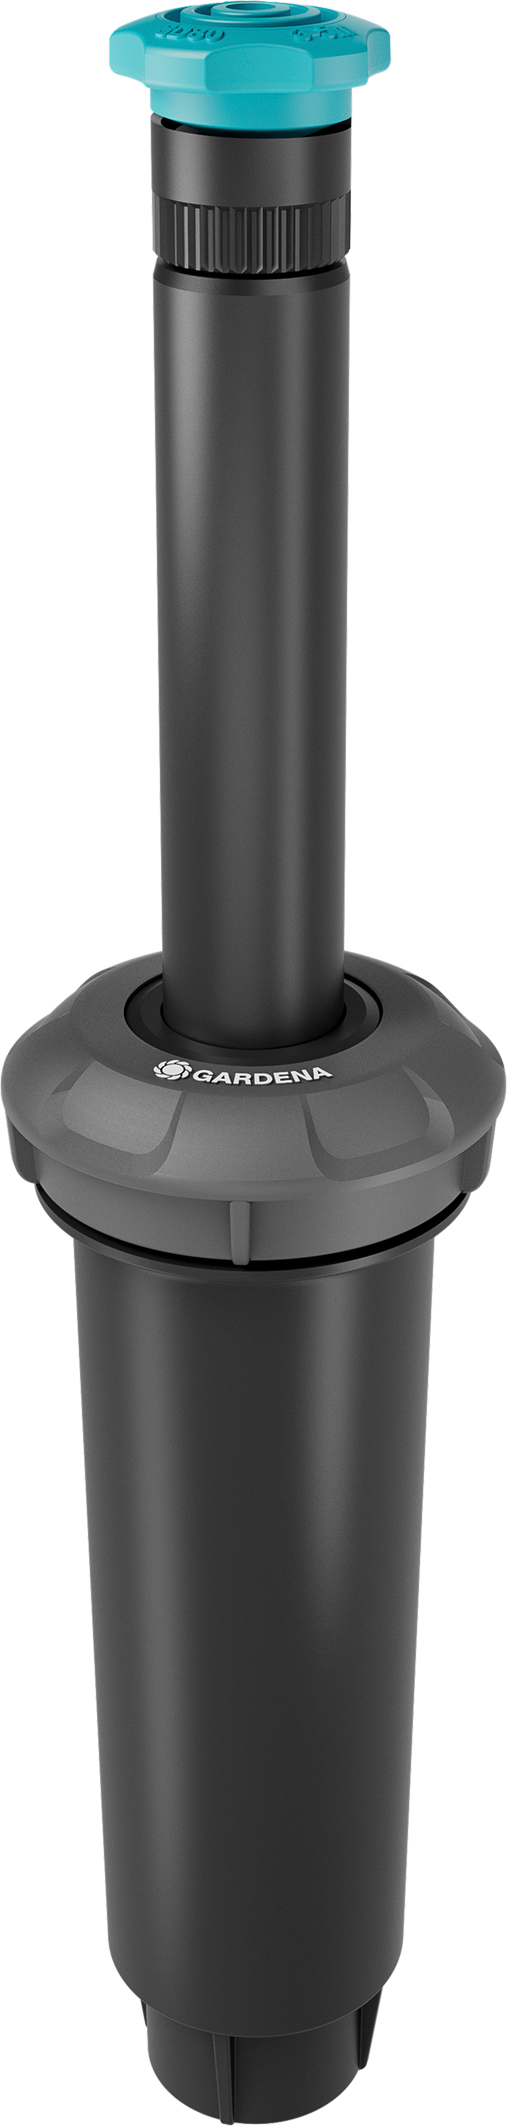 GARDENA Pop-up Sprinkler SD80